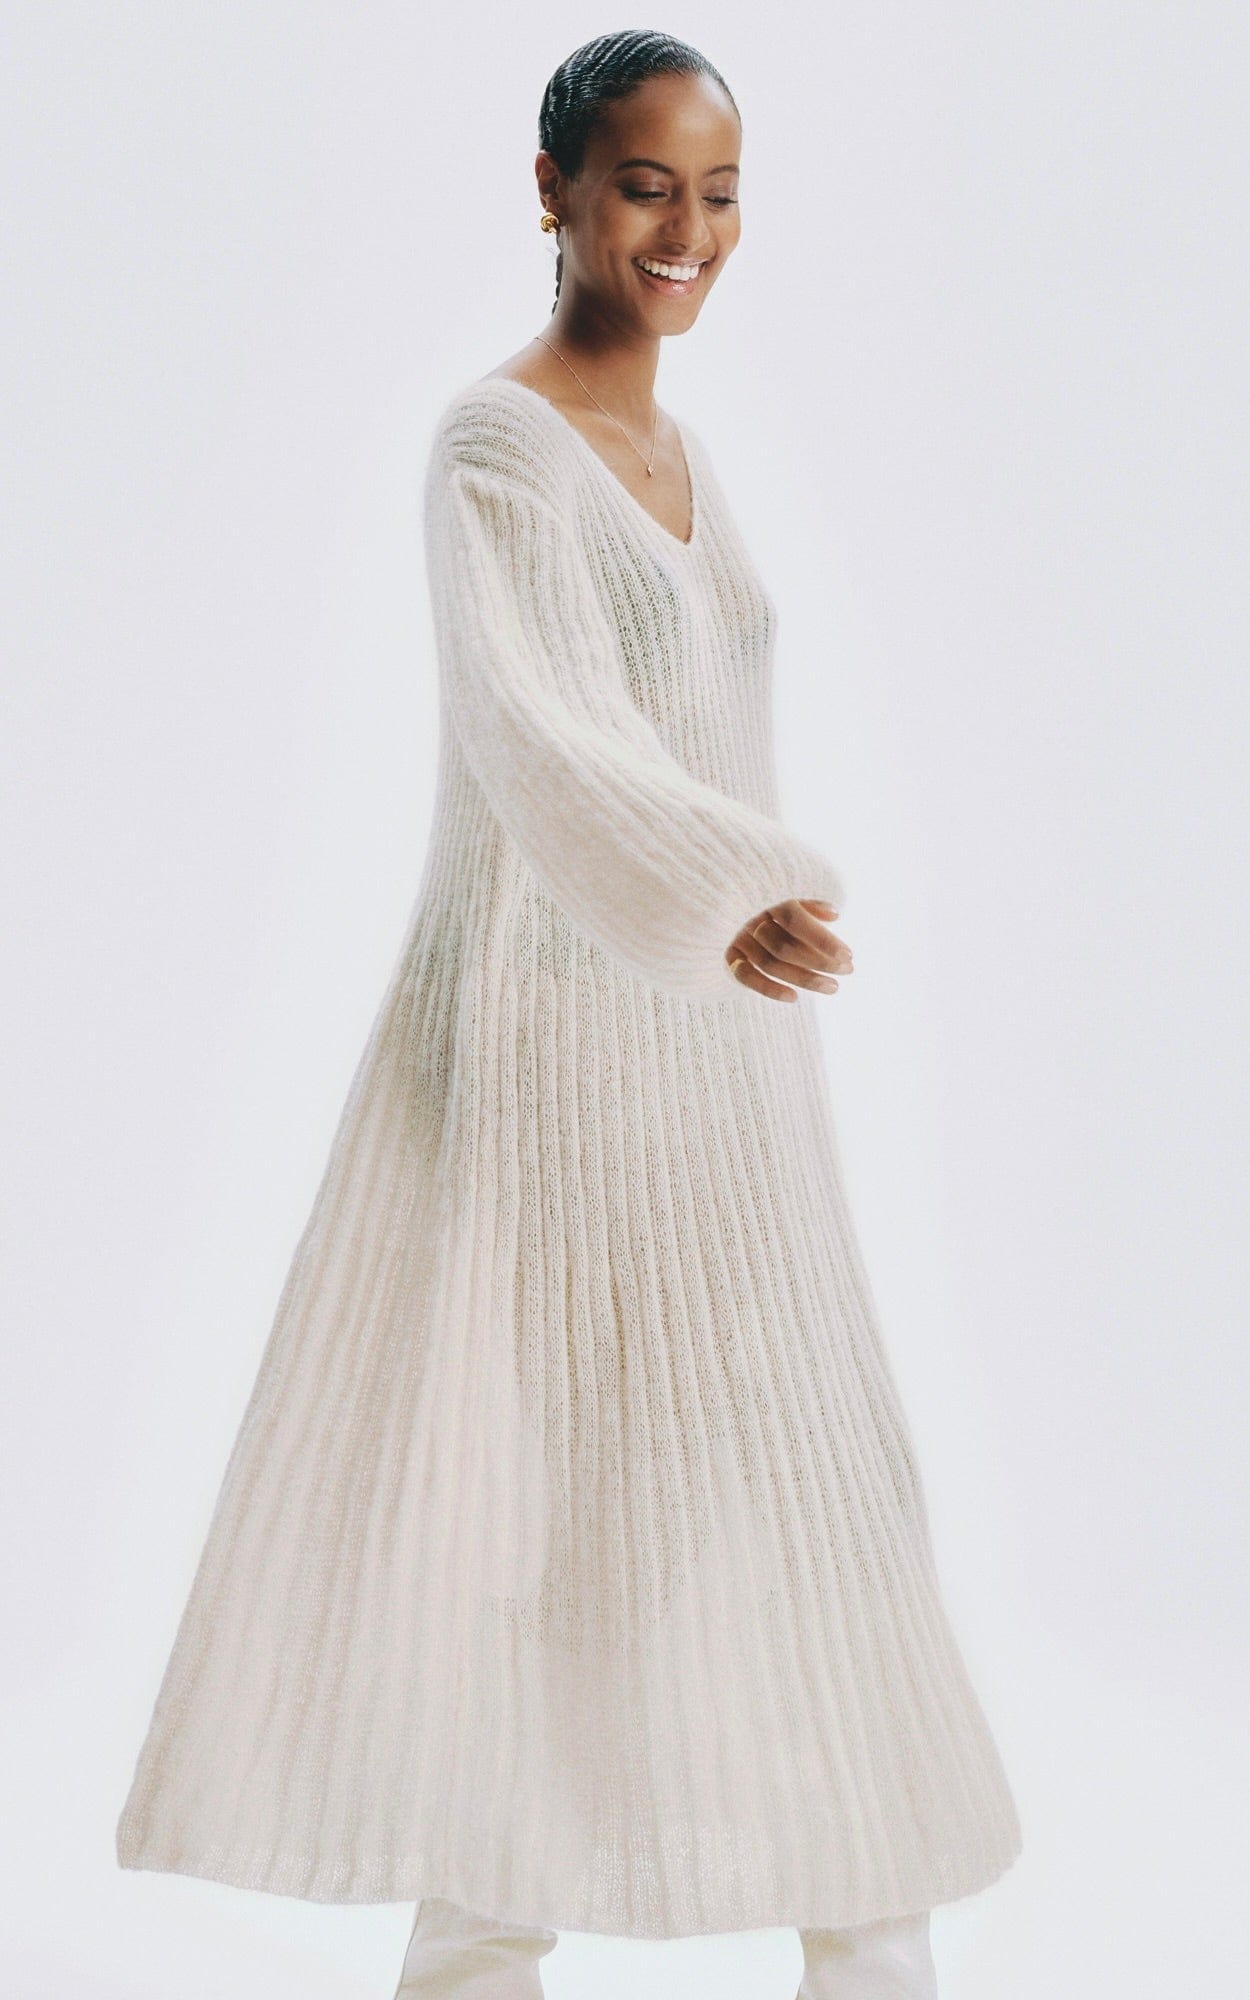 Kleid mit Rippenmuster - SETASURI - Strickset von LANA GROSSA jetzt online kaufen bei OONIQUE